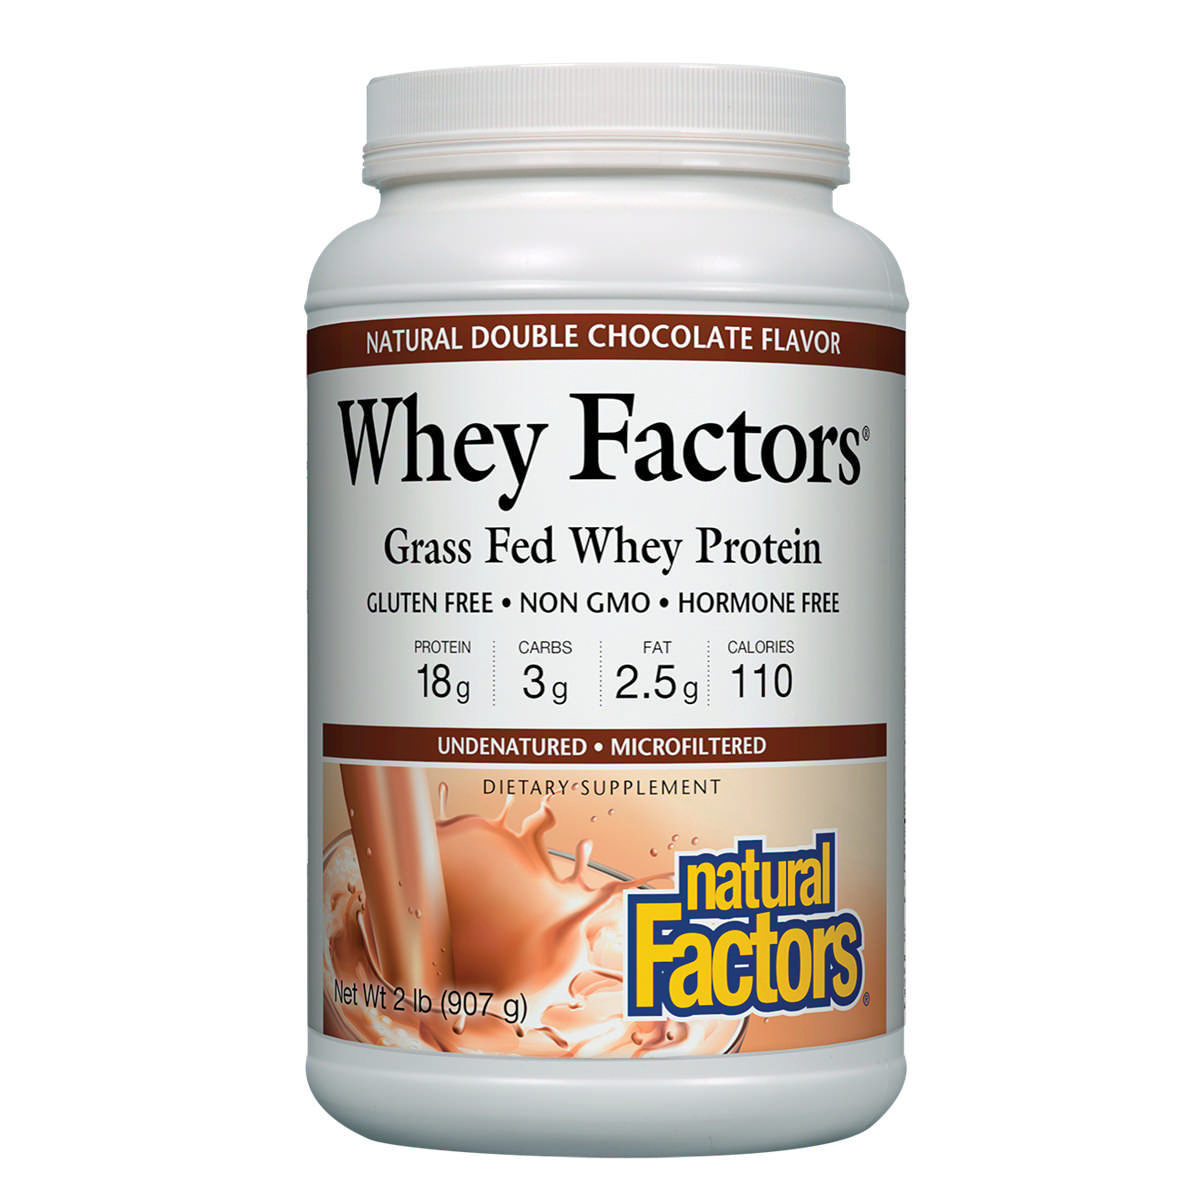 Natural Factors - Whey Factors Double Choc